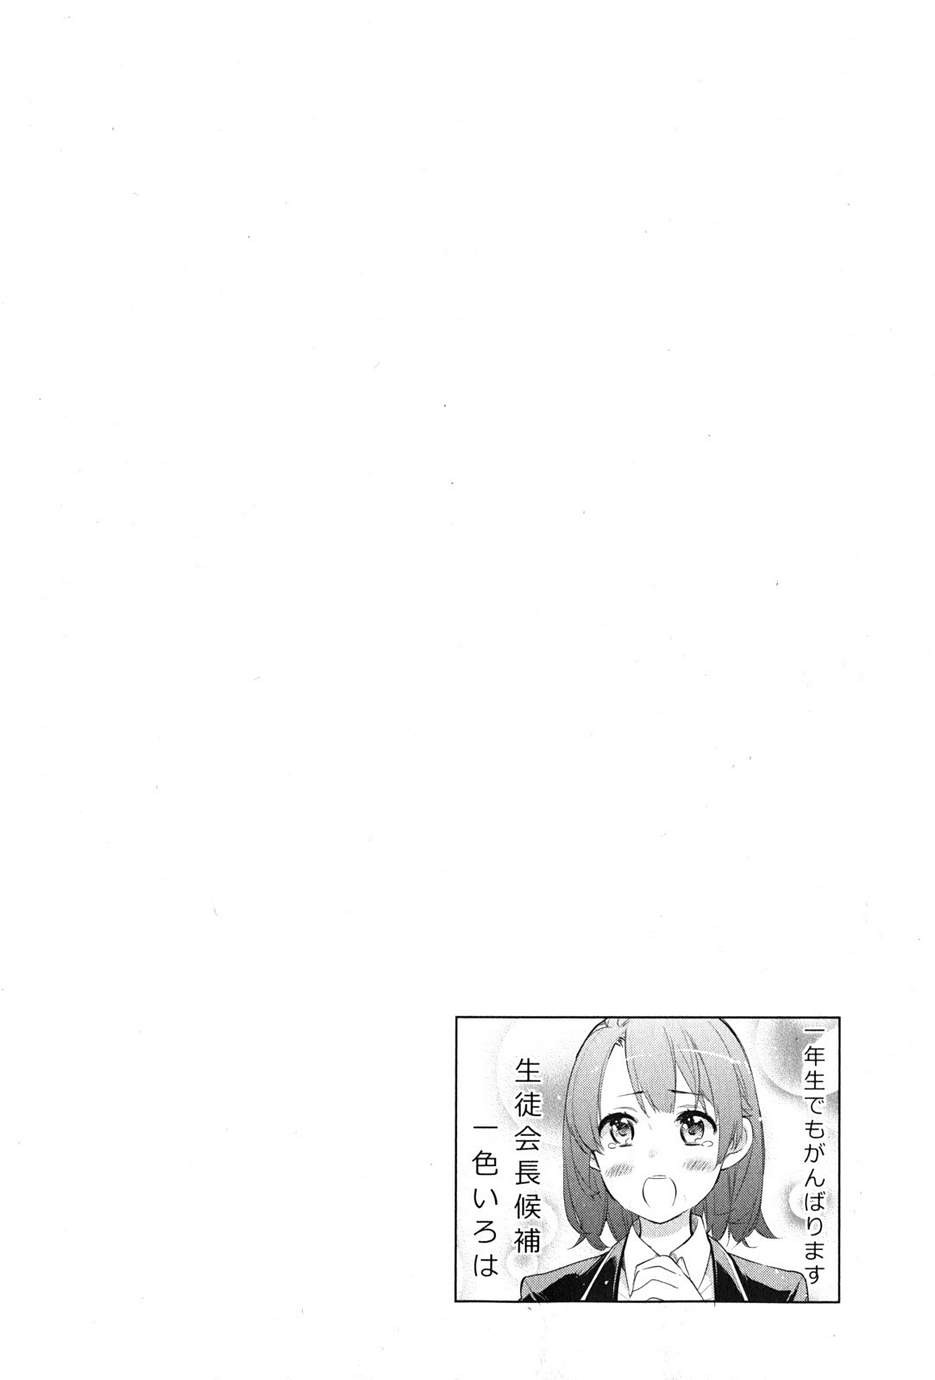 Yahari Ore no Seishun Rabukome wa Machigatte Iru. - Monologue - Chapter 34 - Page 49